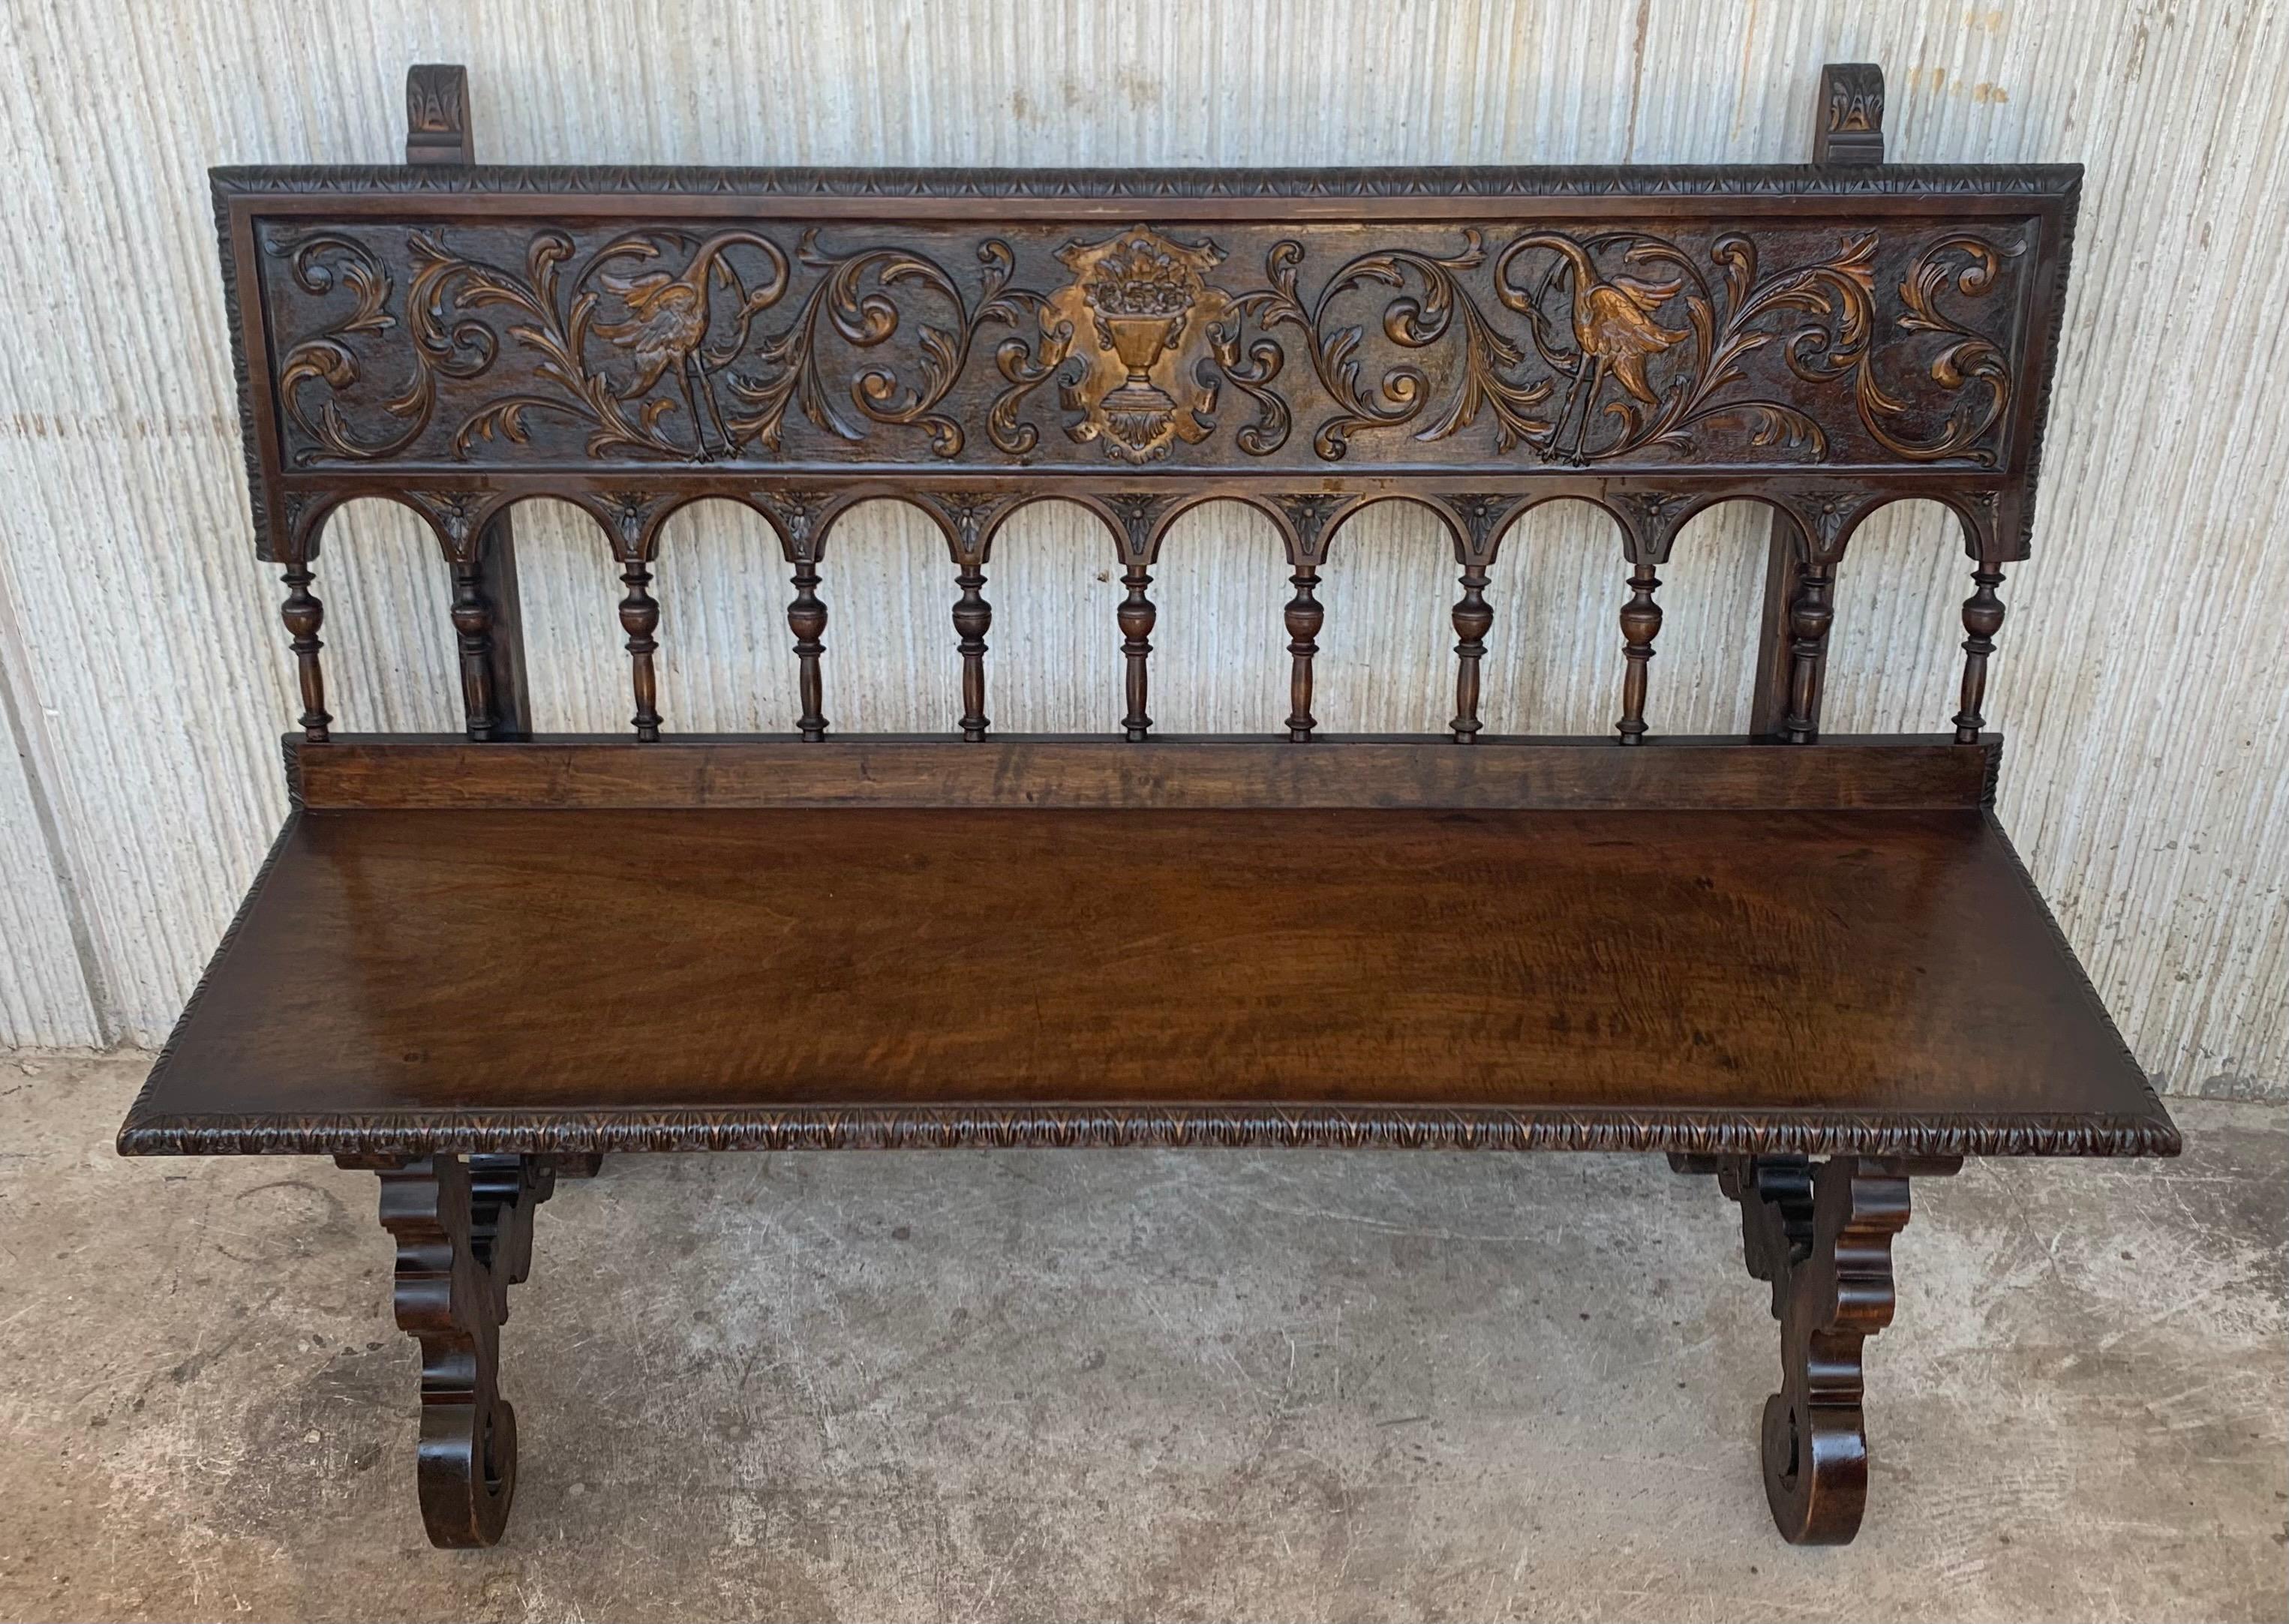 Stunning antique Spanish Renaissance walnut bench, called 